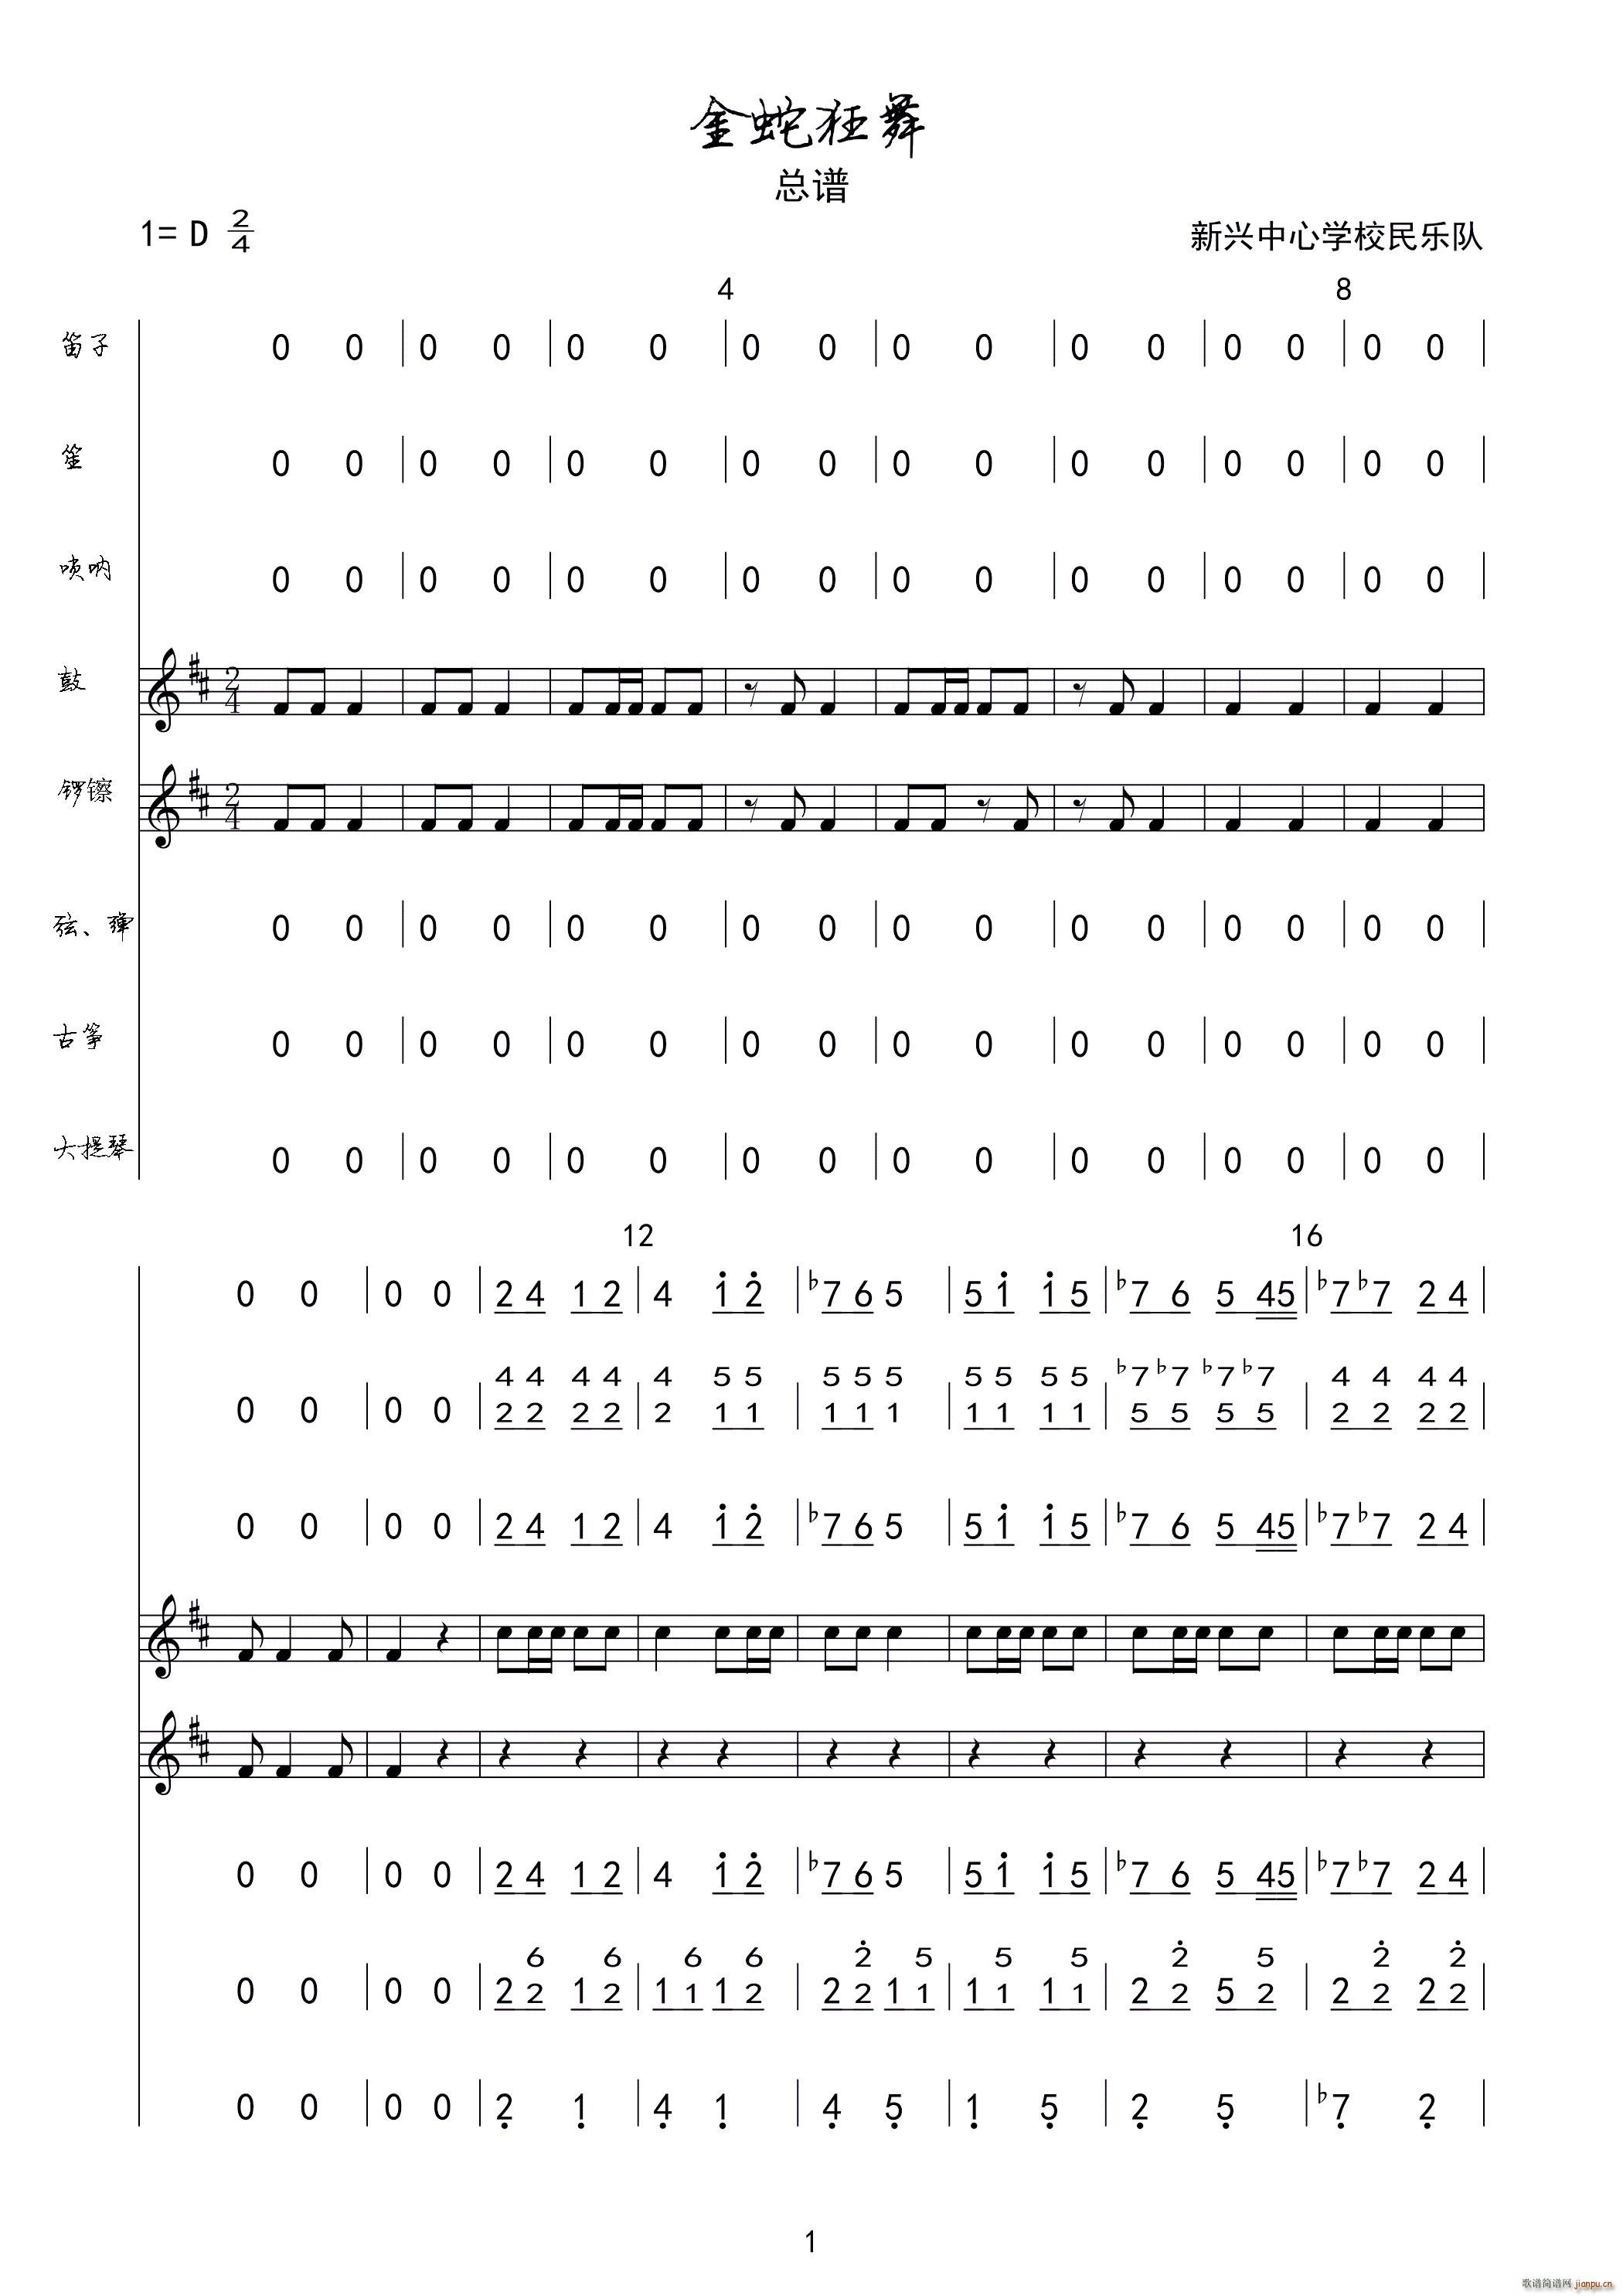 金蛇狂舞-聂耳双手简谱预览2-钢琴谱文件（五线谱、双手简谱、数字谱、Midi、PDF）免费下载